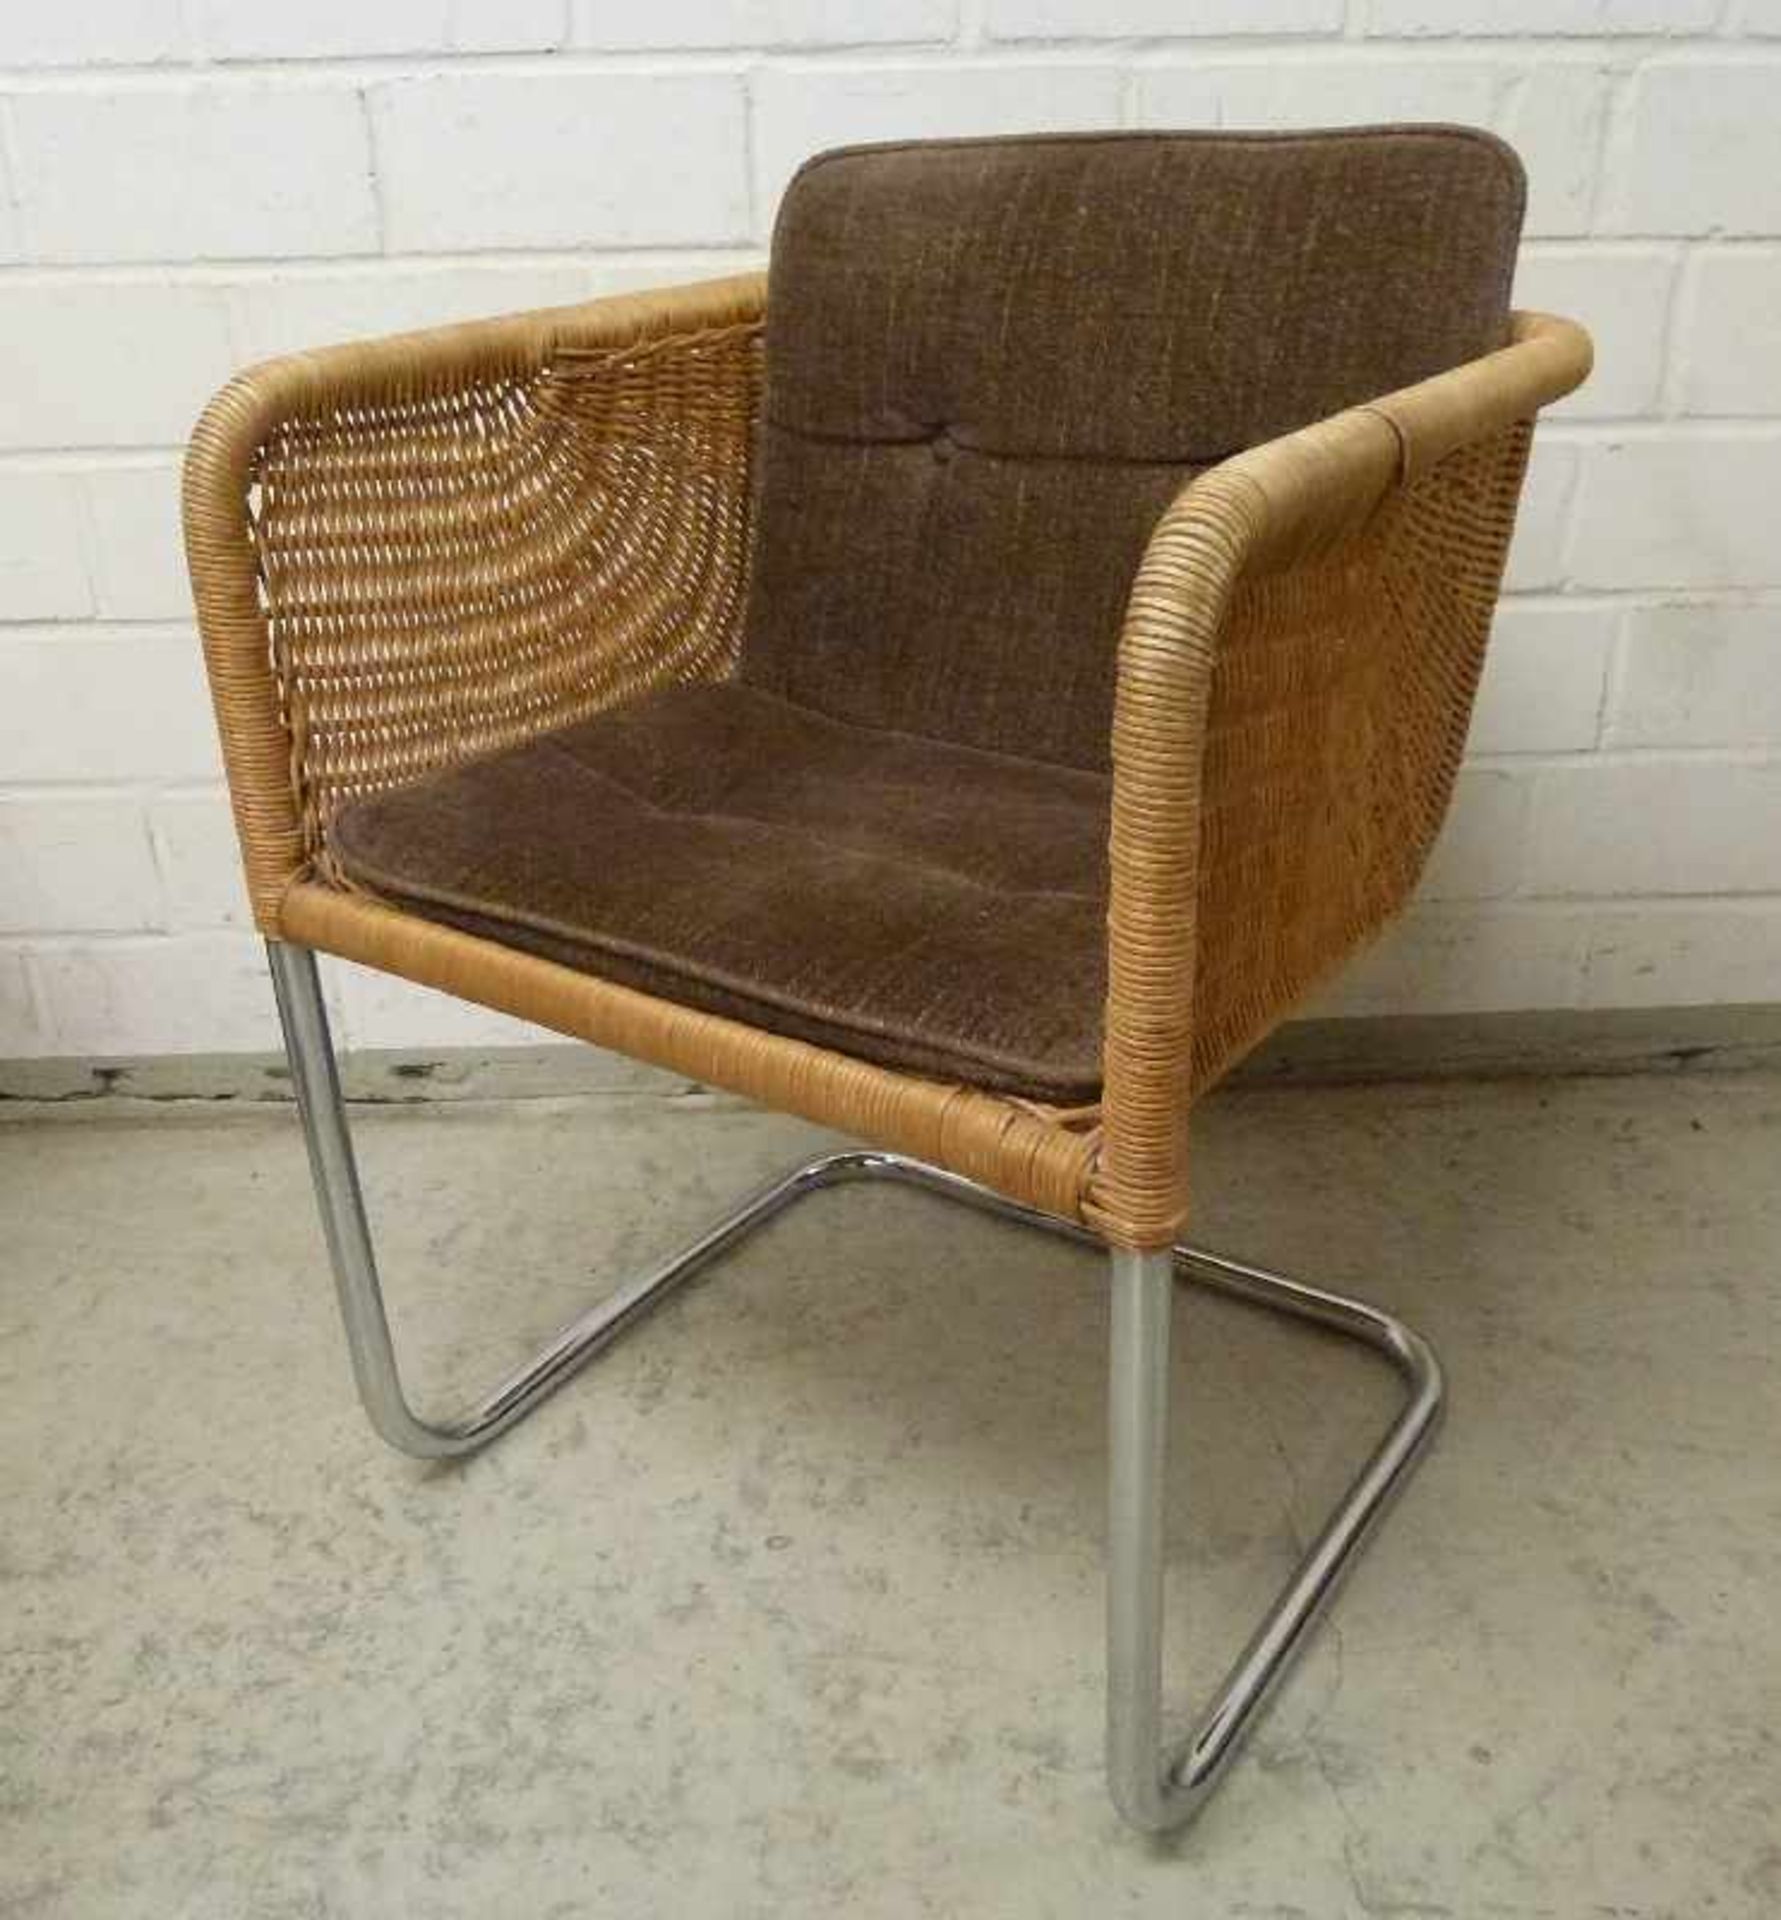 6 Freischwinger Stühle, 1960er Jahre verchromtes Stahlgestell, würfelförmiger Sitz, - Bild 2 aus 3